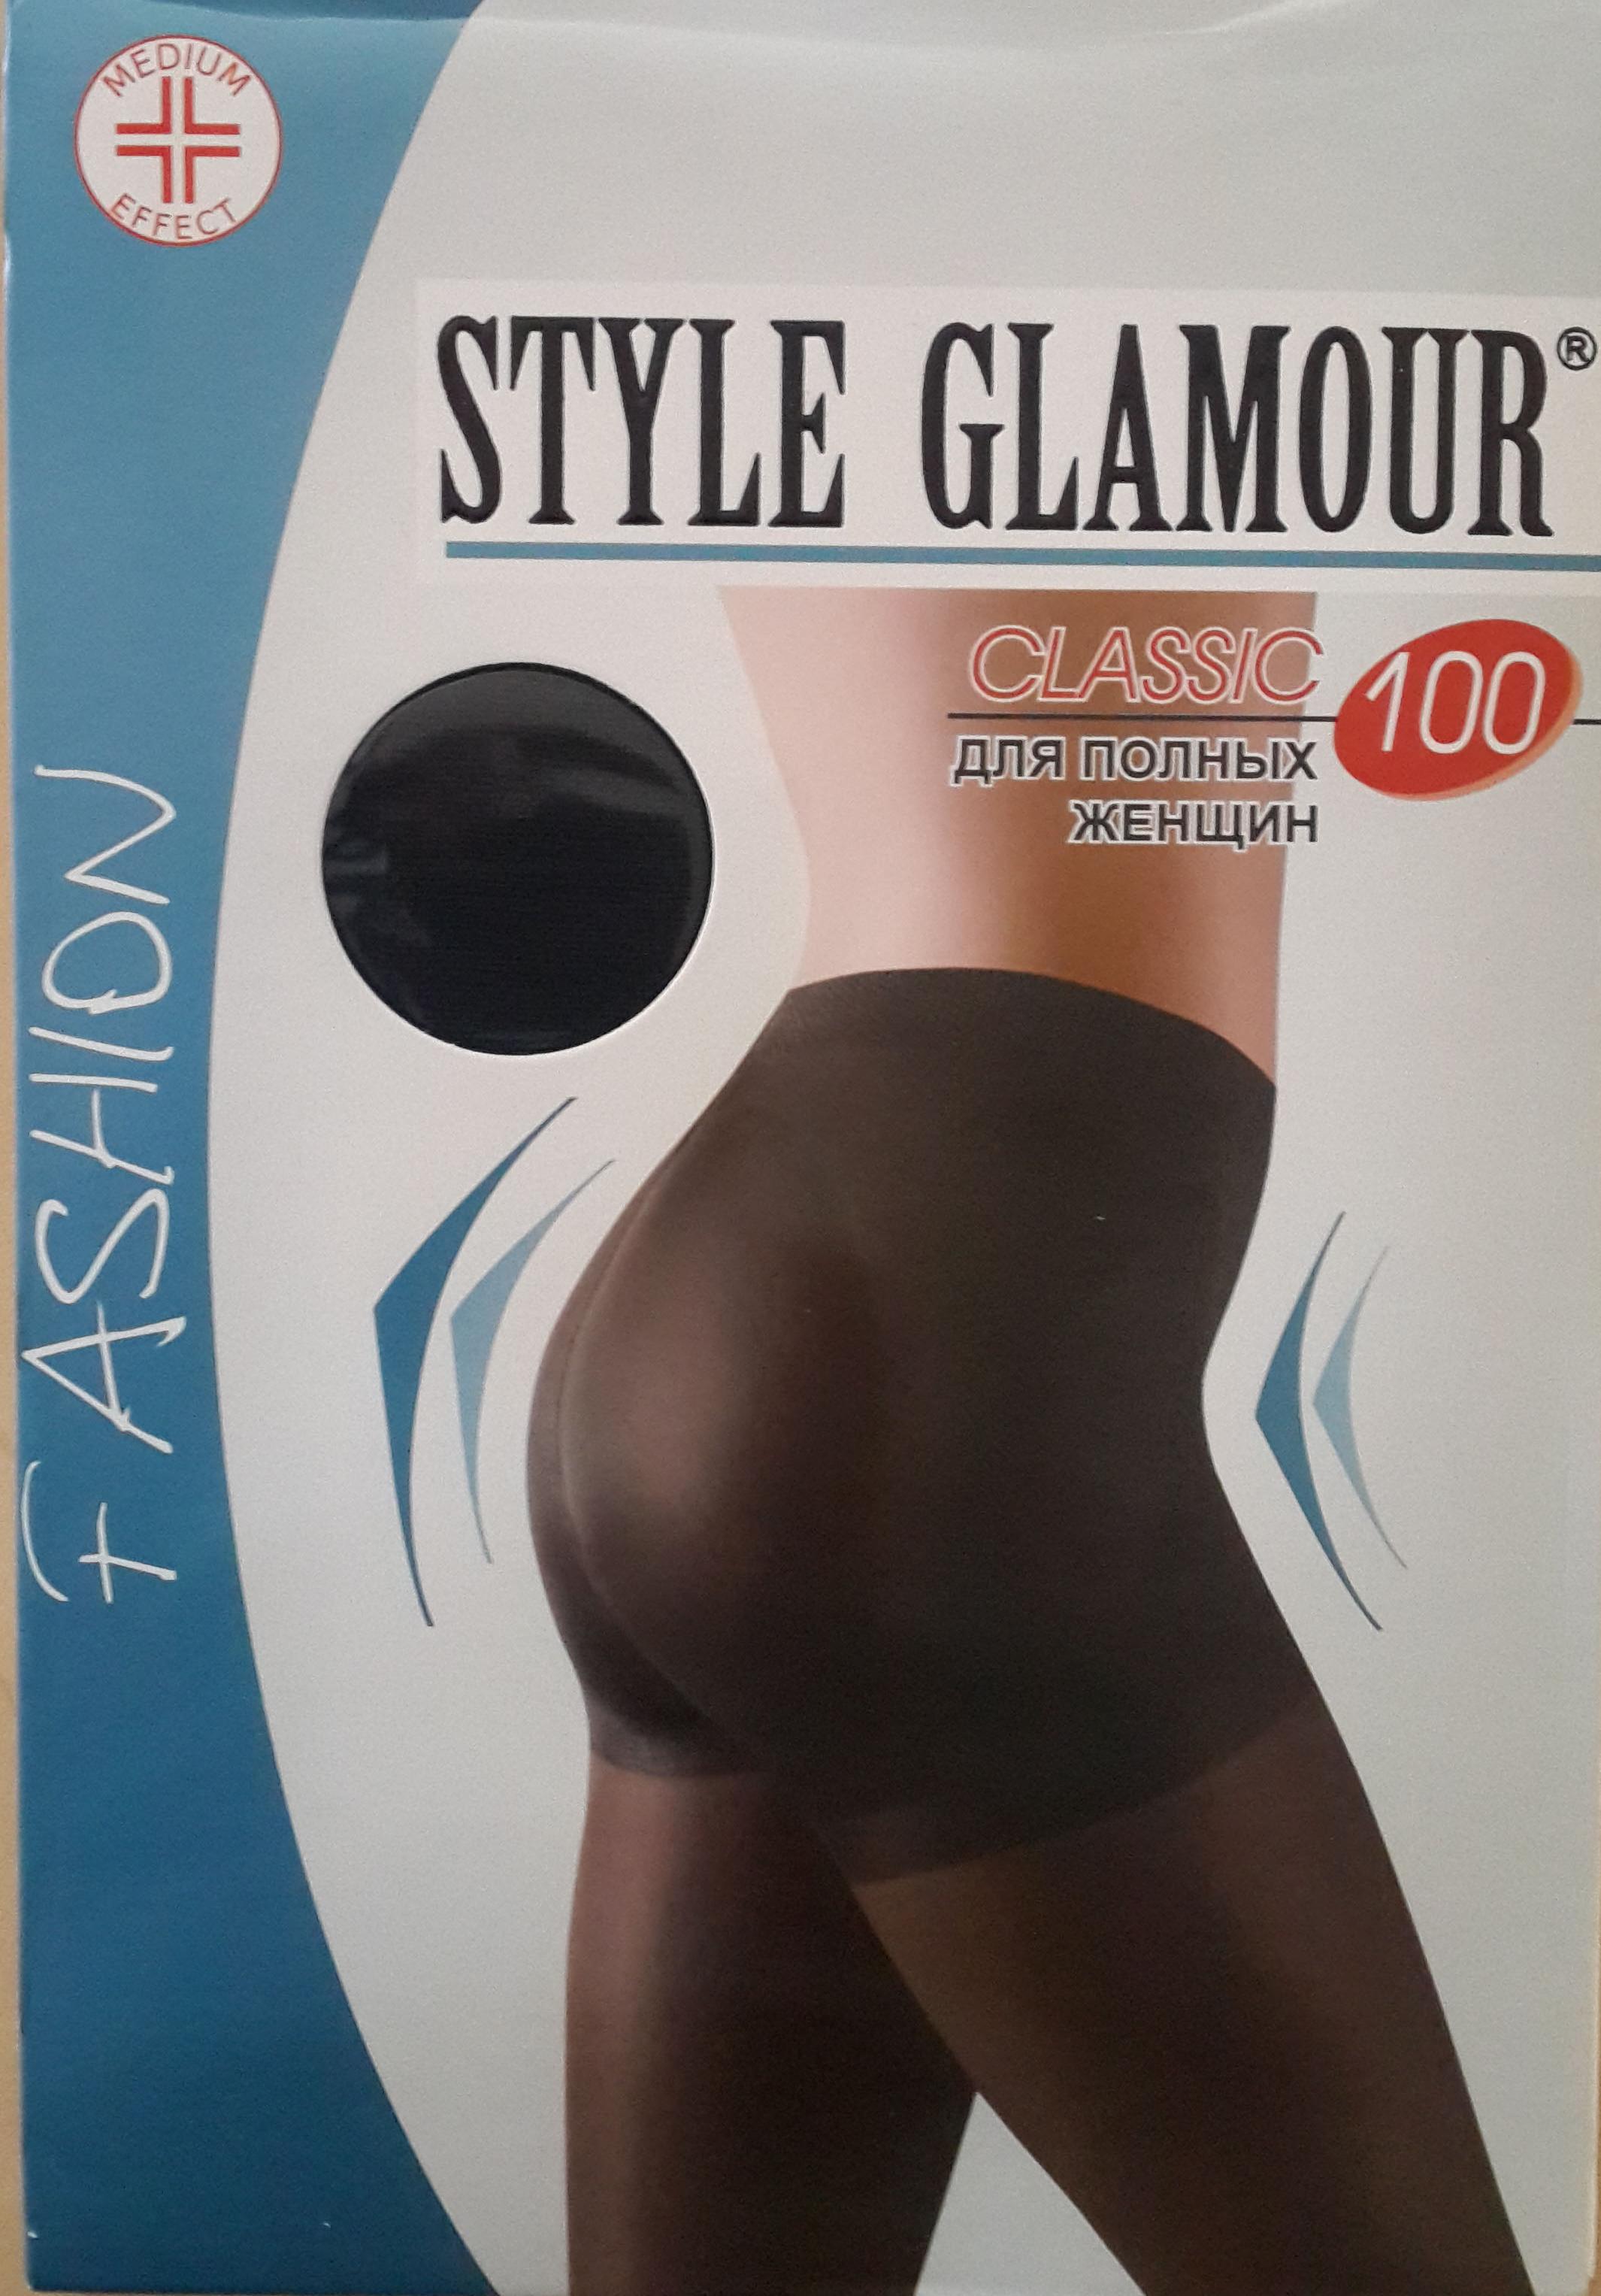 Style Glamour 5-6XL, каппучино, колготки для полных женщин, 100d